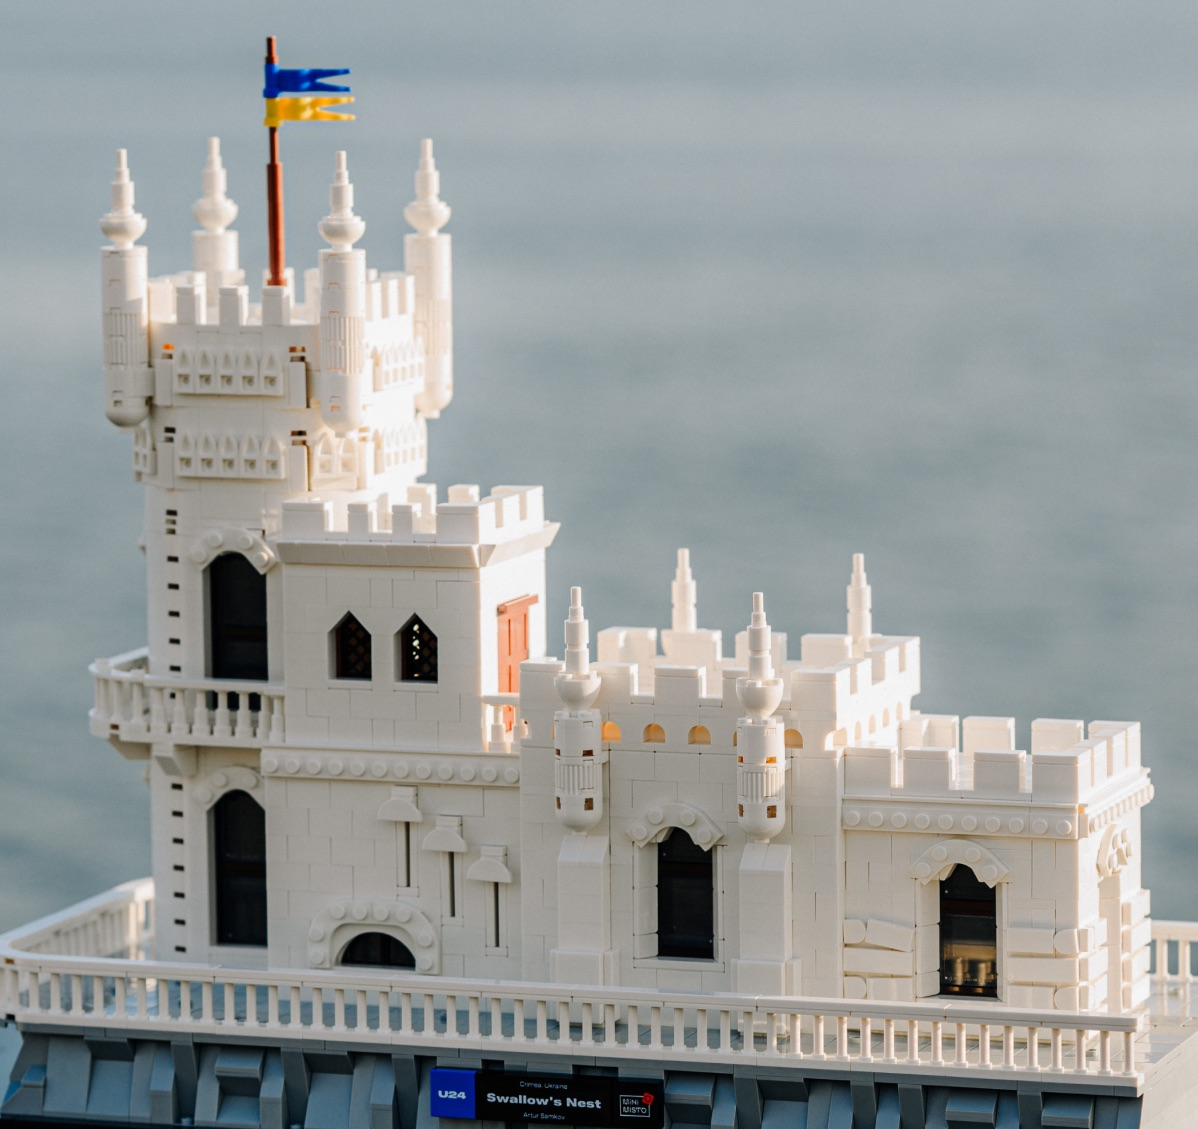 Лего-моделі українських пам'яток від UNITED24 та LEGO стали шляхом до відновлення України.